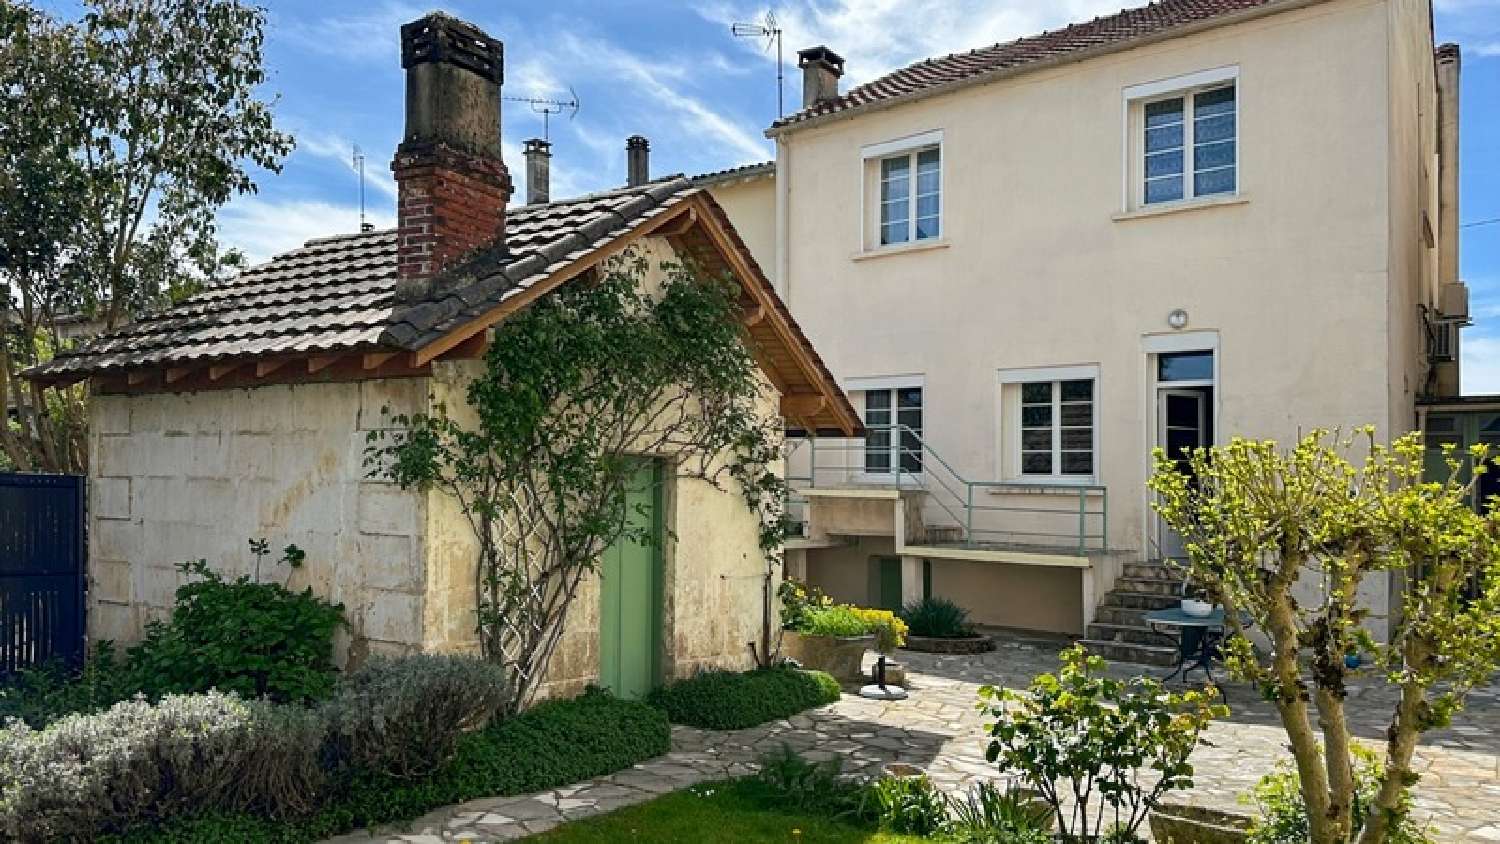  à vendre maison de ville Bergerac Dordogne 3